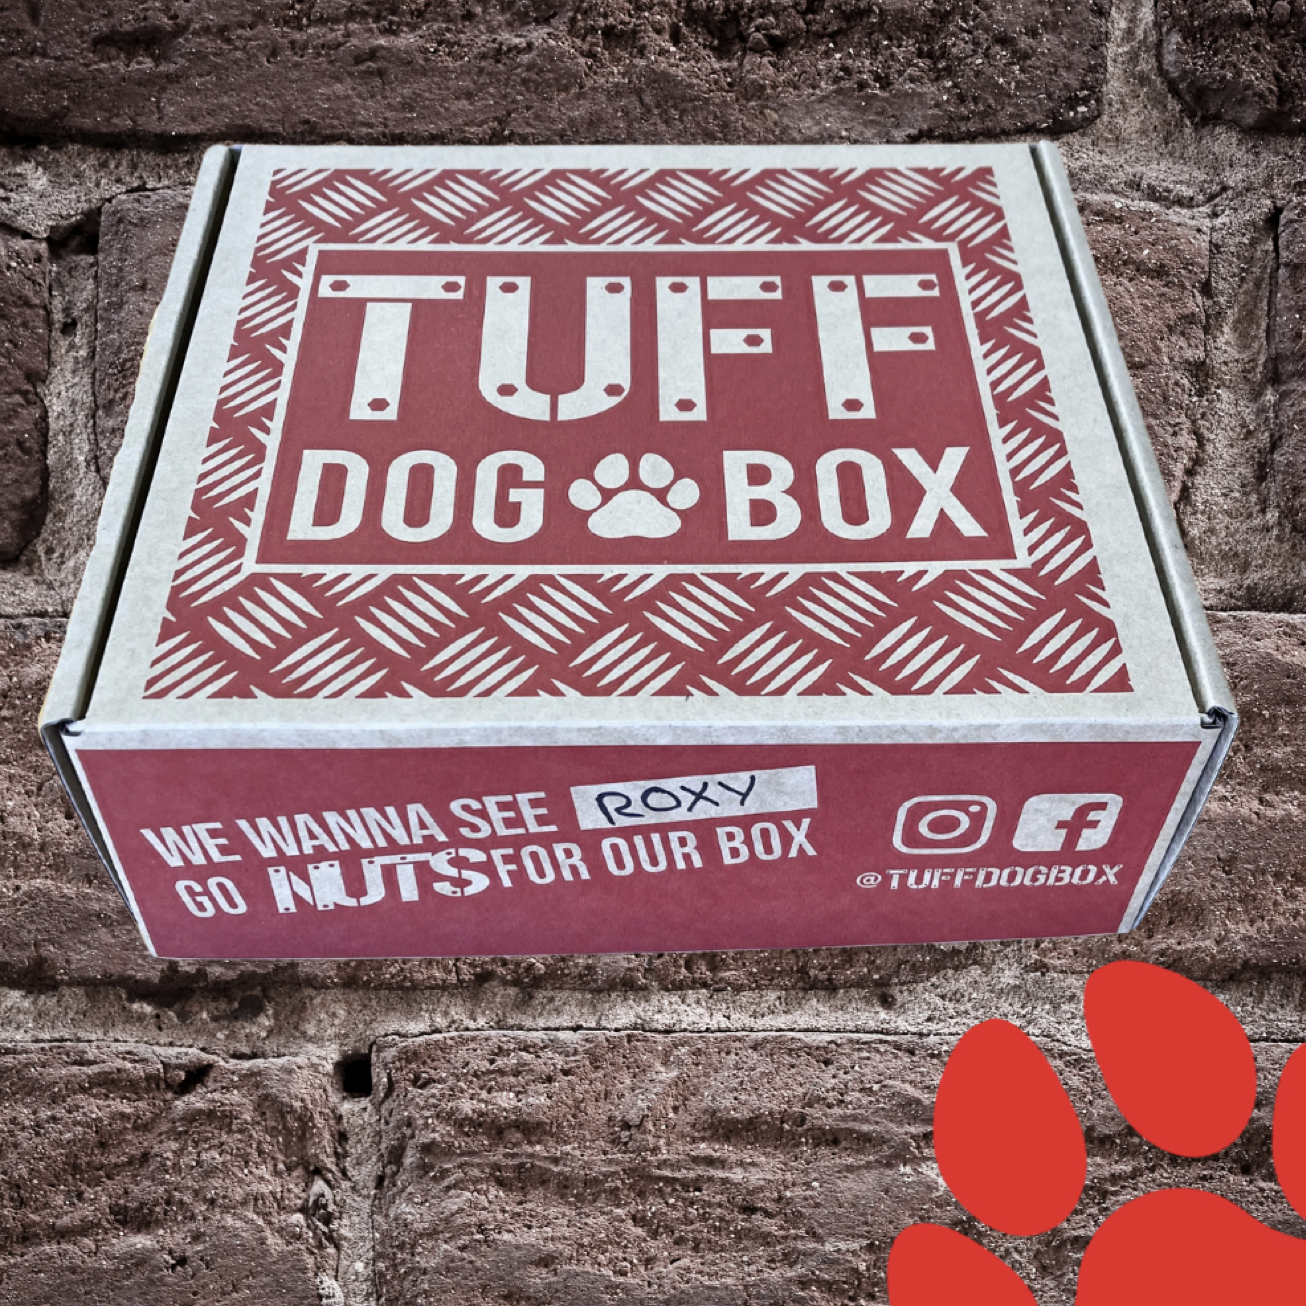 Aussie Subscription Box - the TUFF DOG BOX